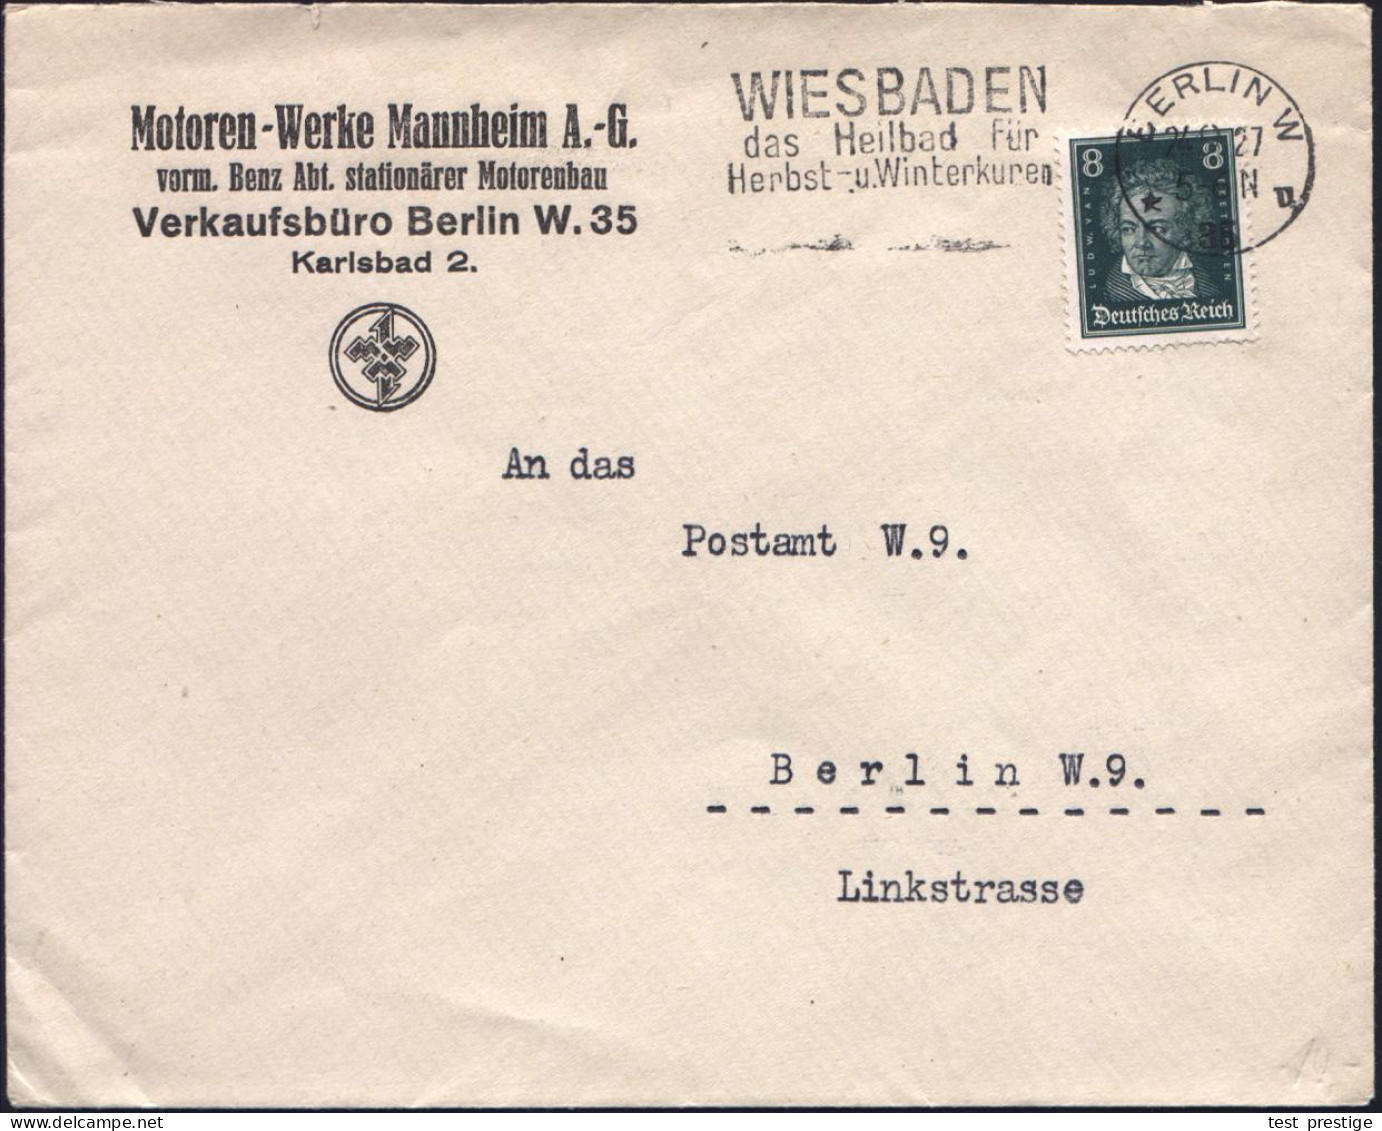 BERLIN W/ *35u/ WIESBADEN/ Das Heilbad.. 1927 (24.9.) MWSt Auf Firmen-Bf: Motoren-Werke Mannheim AG / Vorm. Benz Abt. St - Cars